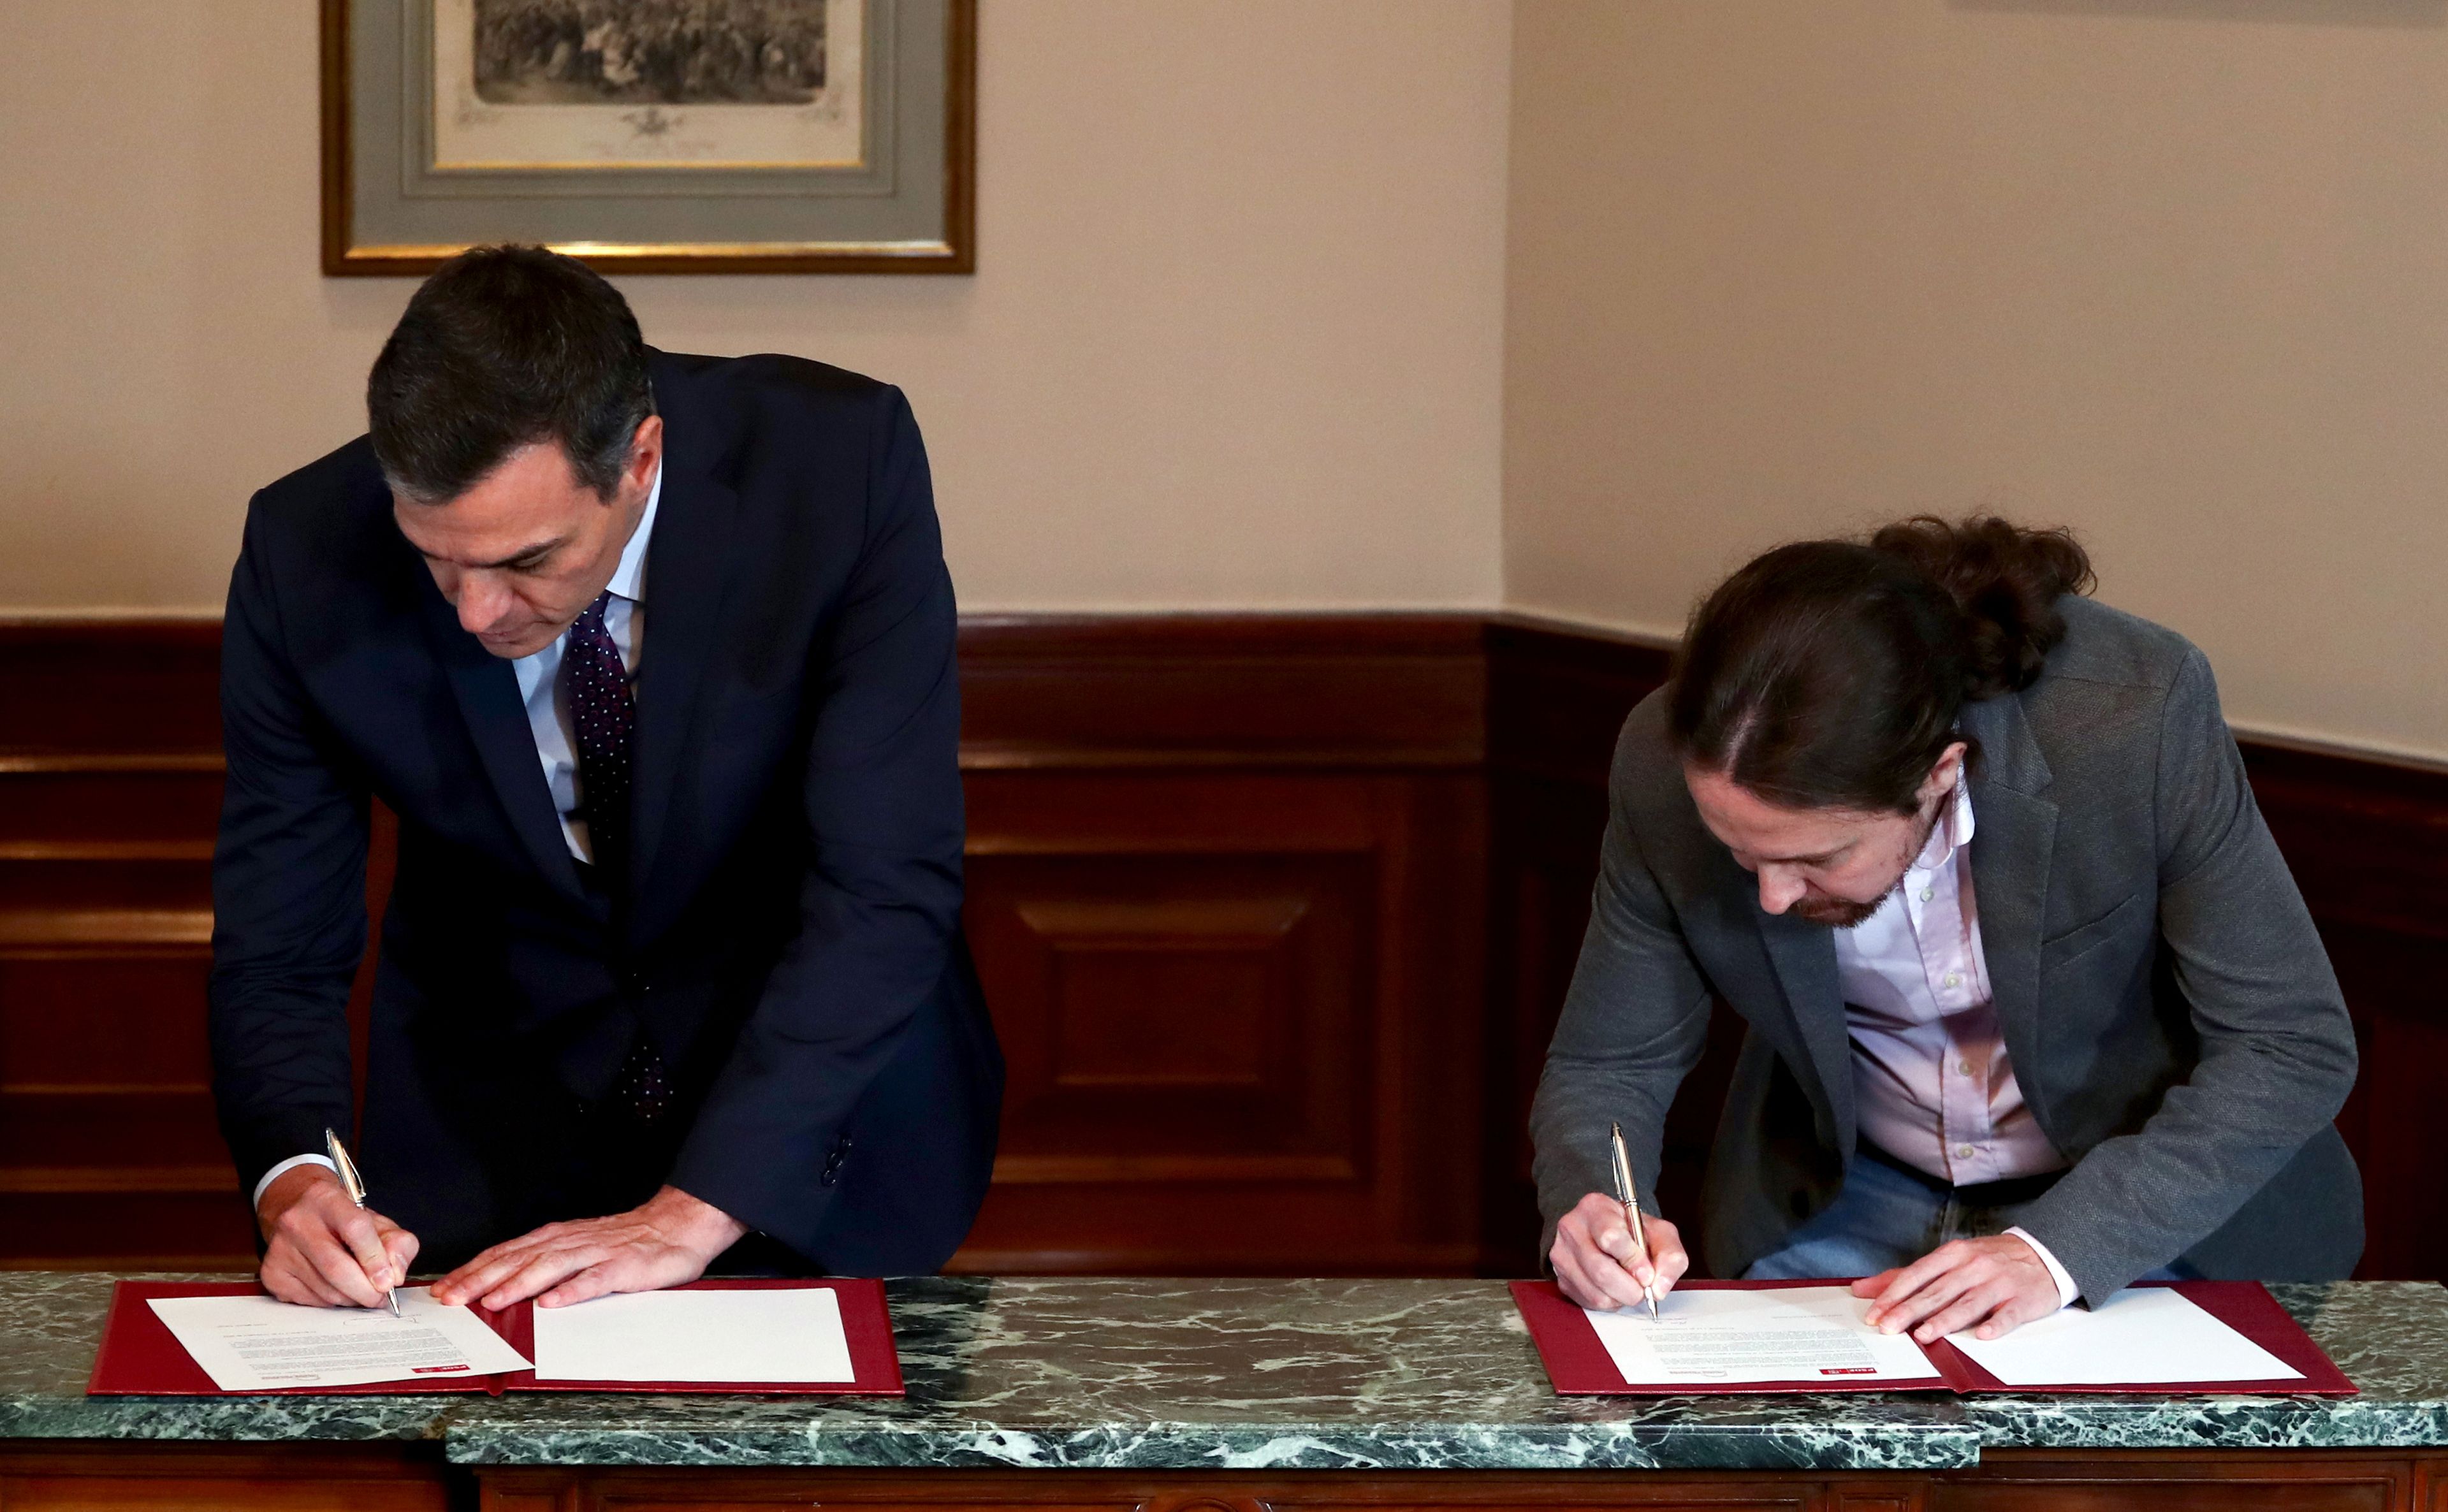 Pedro sánchez y Pablo Iglesias firman su preacuerdo para formar Gobierno.